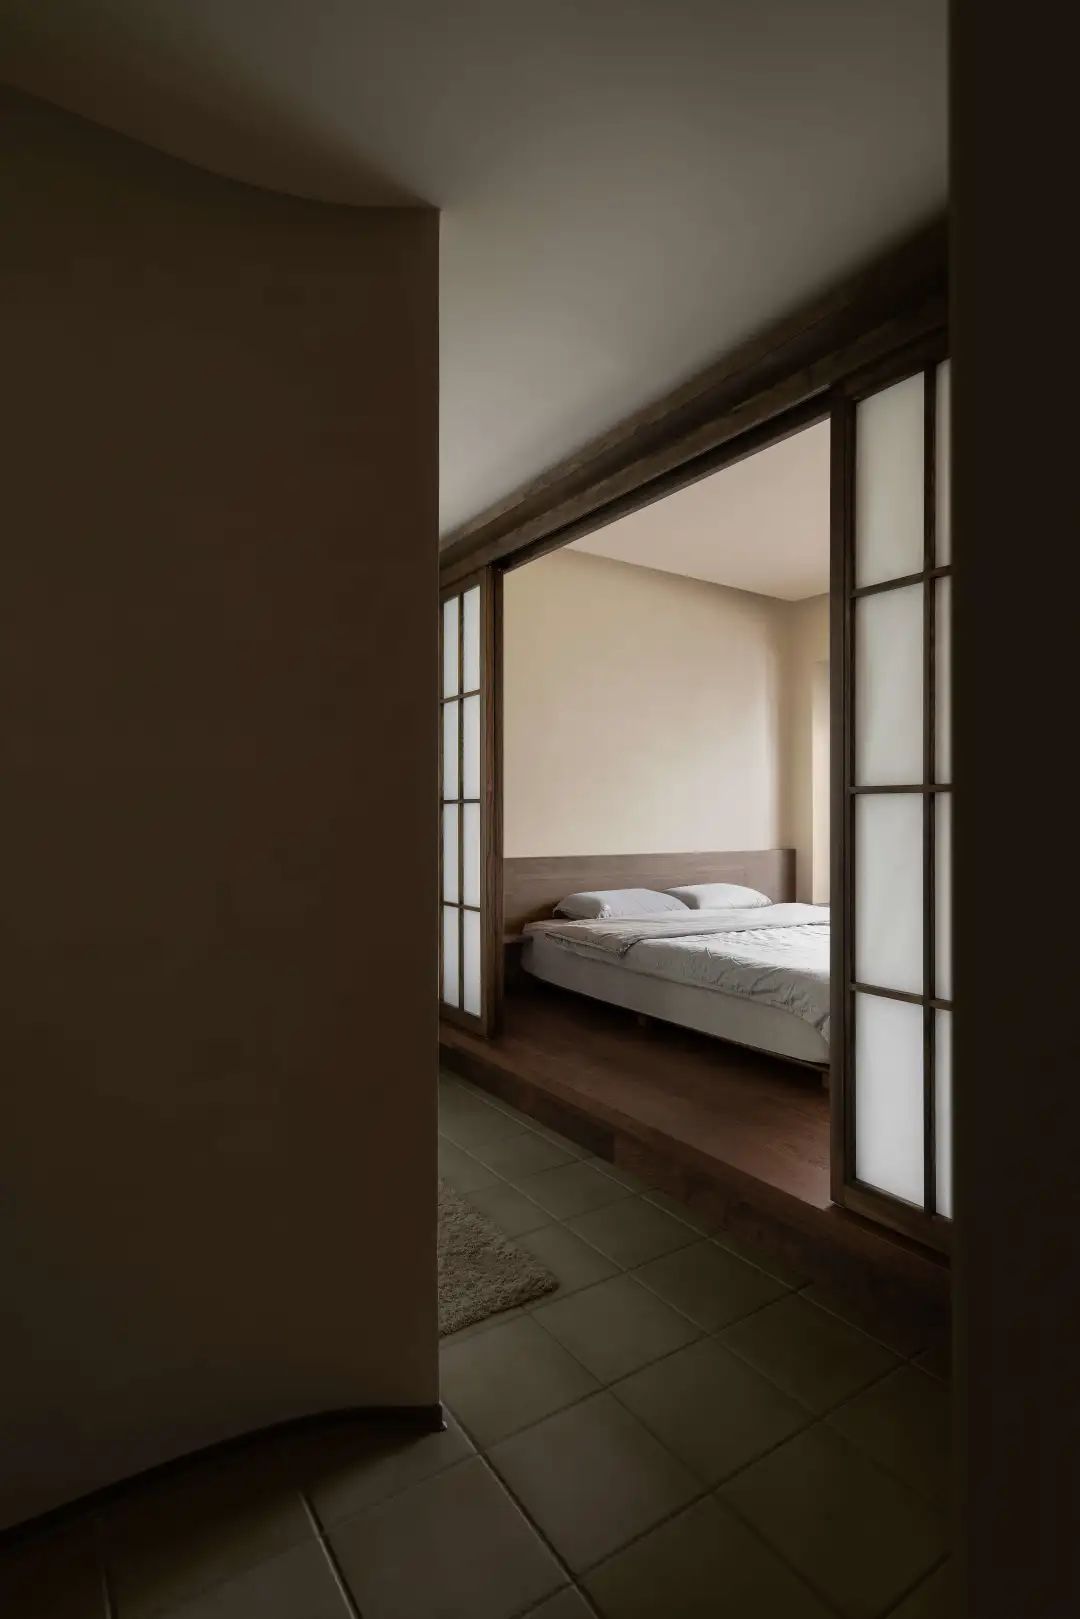 Kiểu thiết kế Nhật Bản sẽ giúp bạn tối ưu tốt không gian của mình với những nội thất thông minh